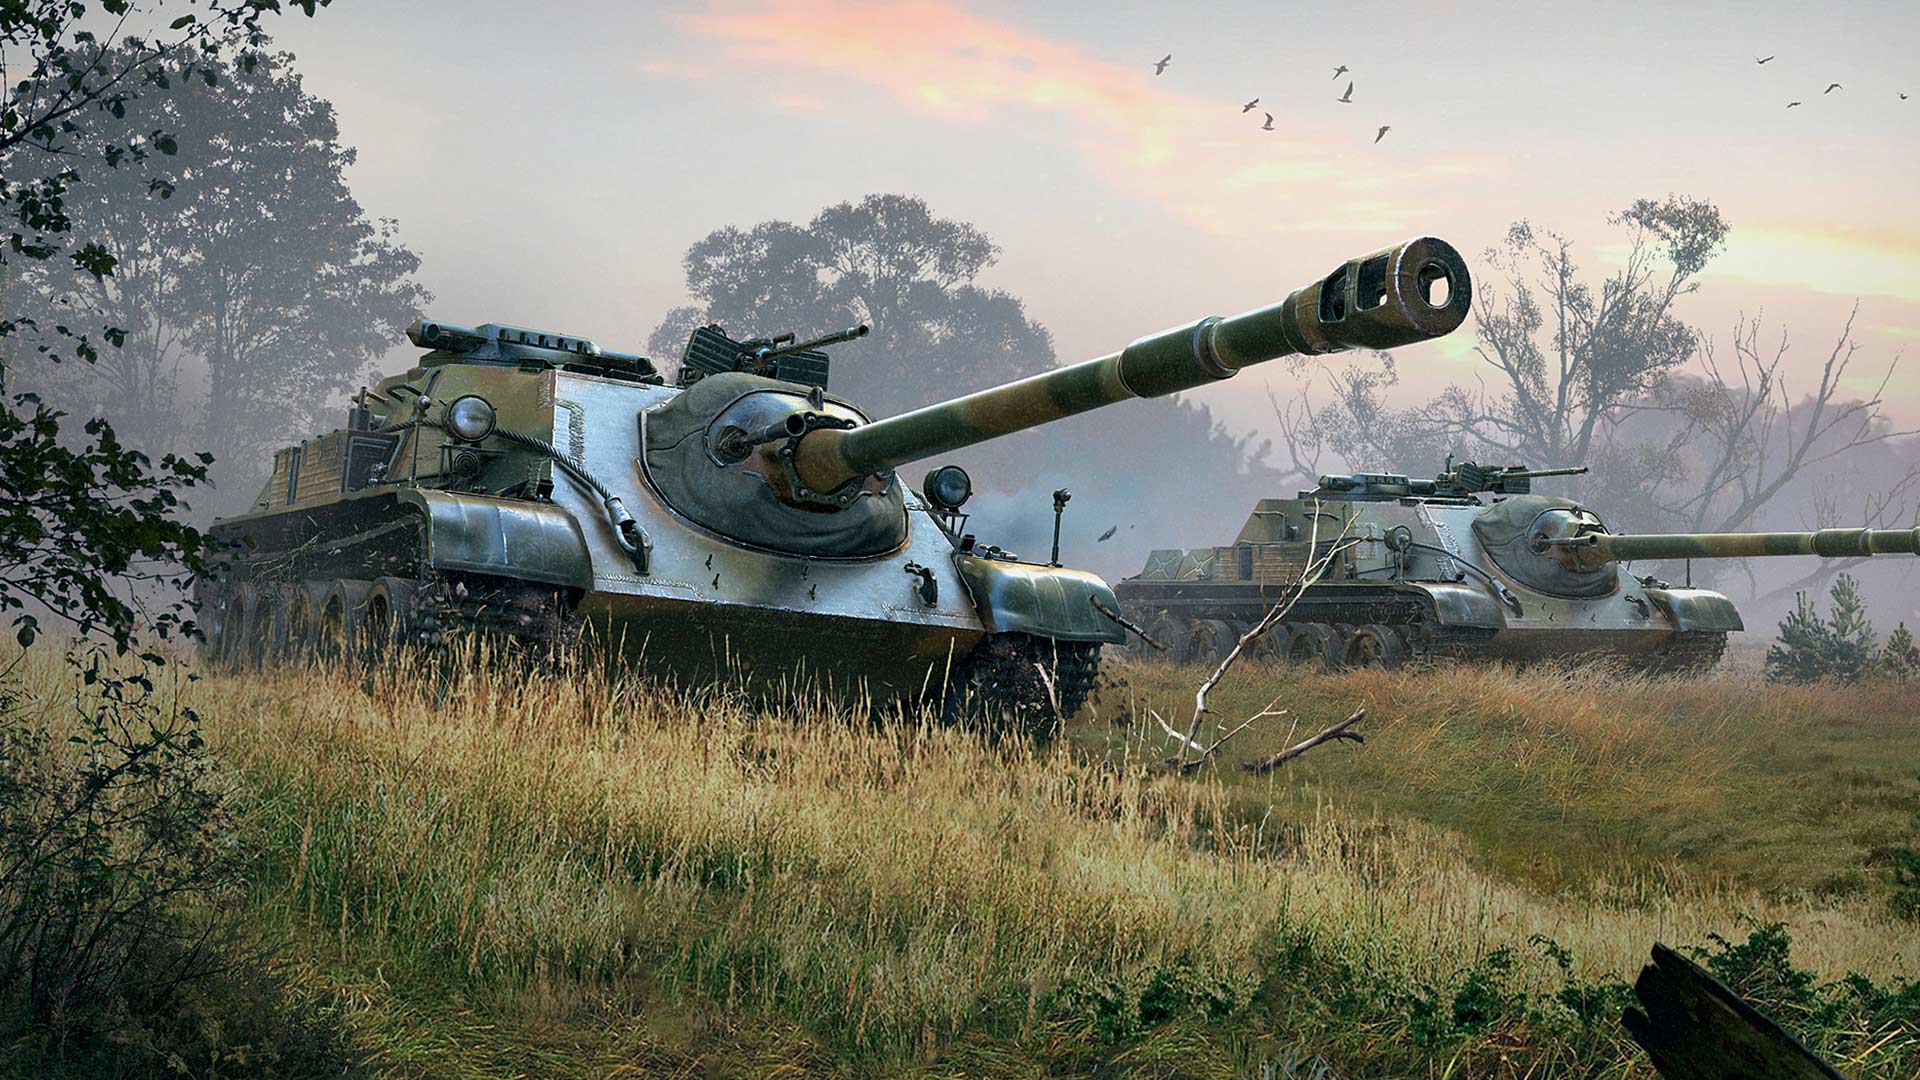 Steam :: World of Tanks Blitz :: Y5